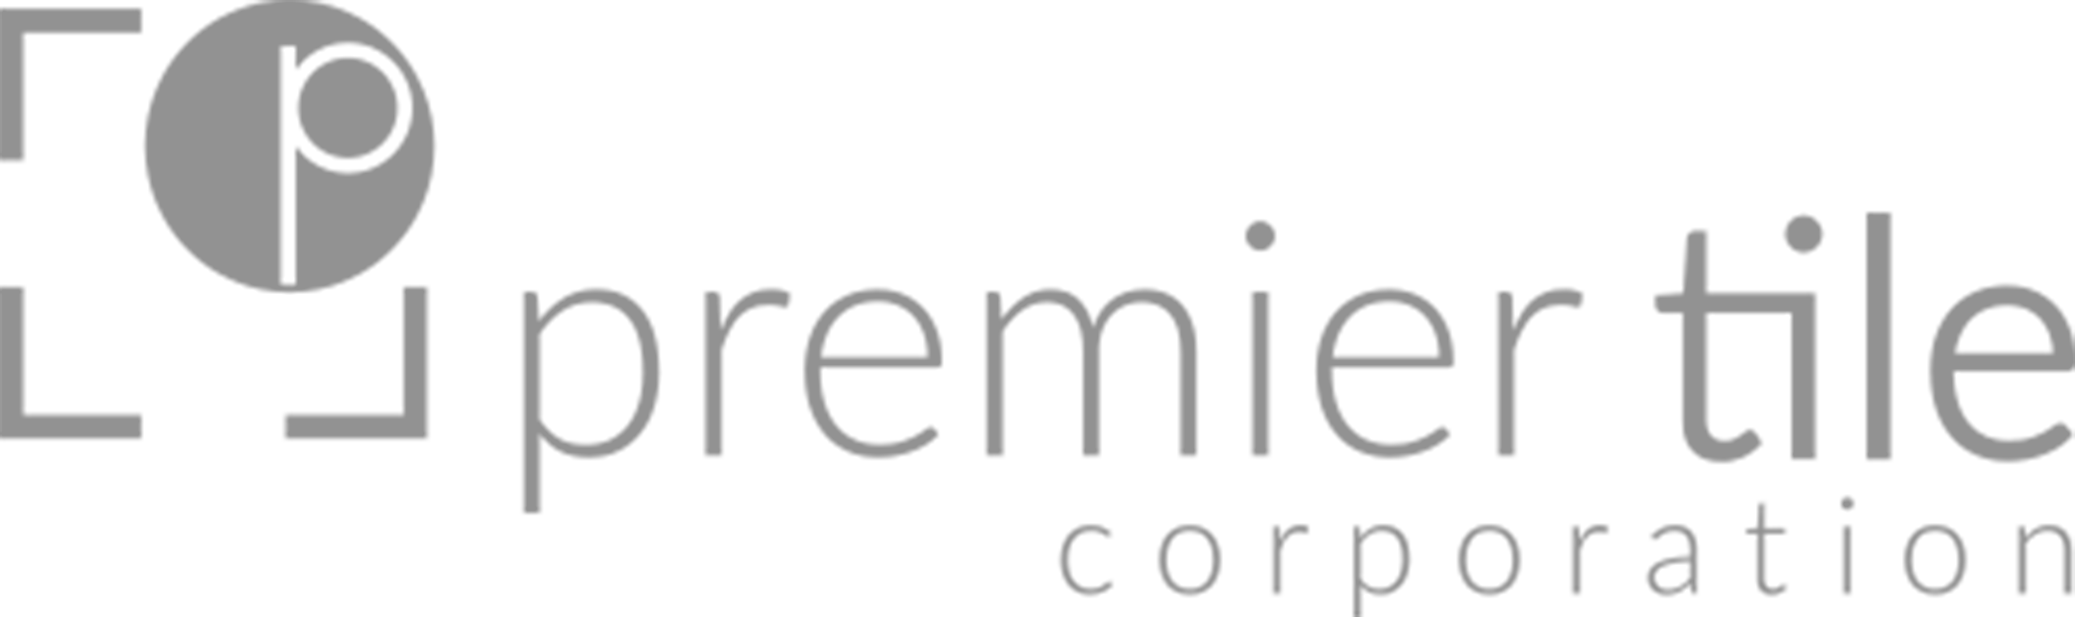 premier-tile-logo-header.png